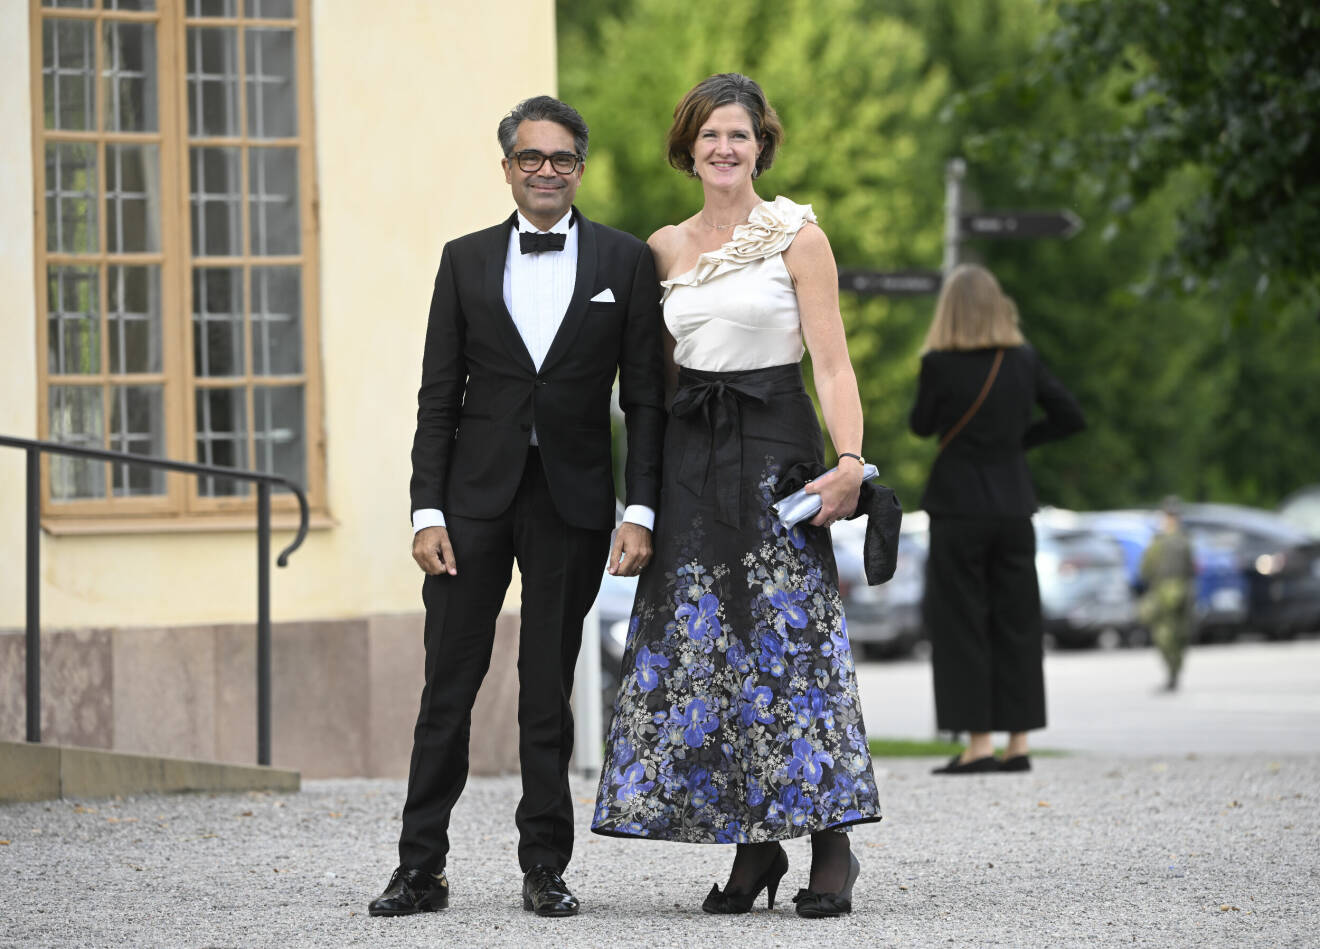 David Kinberg Batra och landshövding Anna Kinberg Batra anländer till kvällens jubileumsföreställning på Drottningholms slottsteater med anledning av kungens 50-årsjubileum.